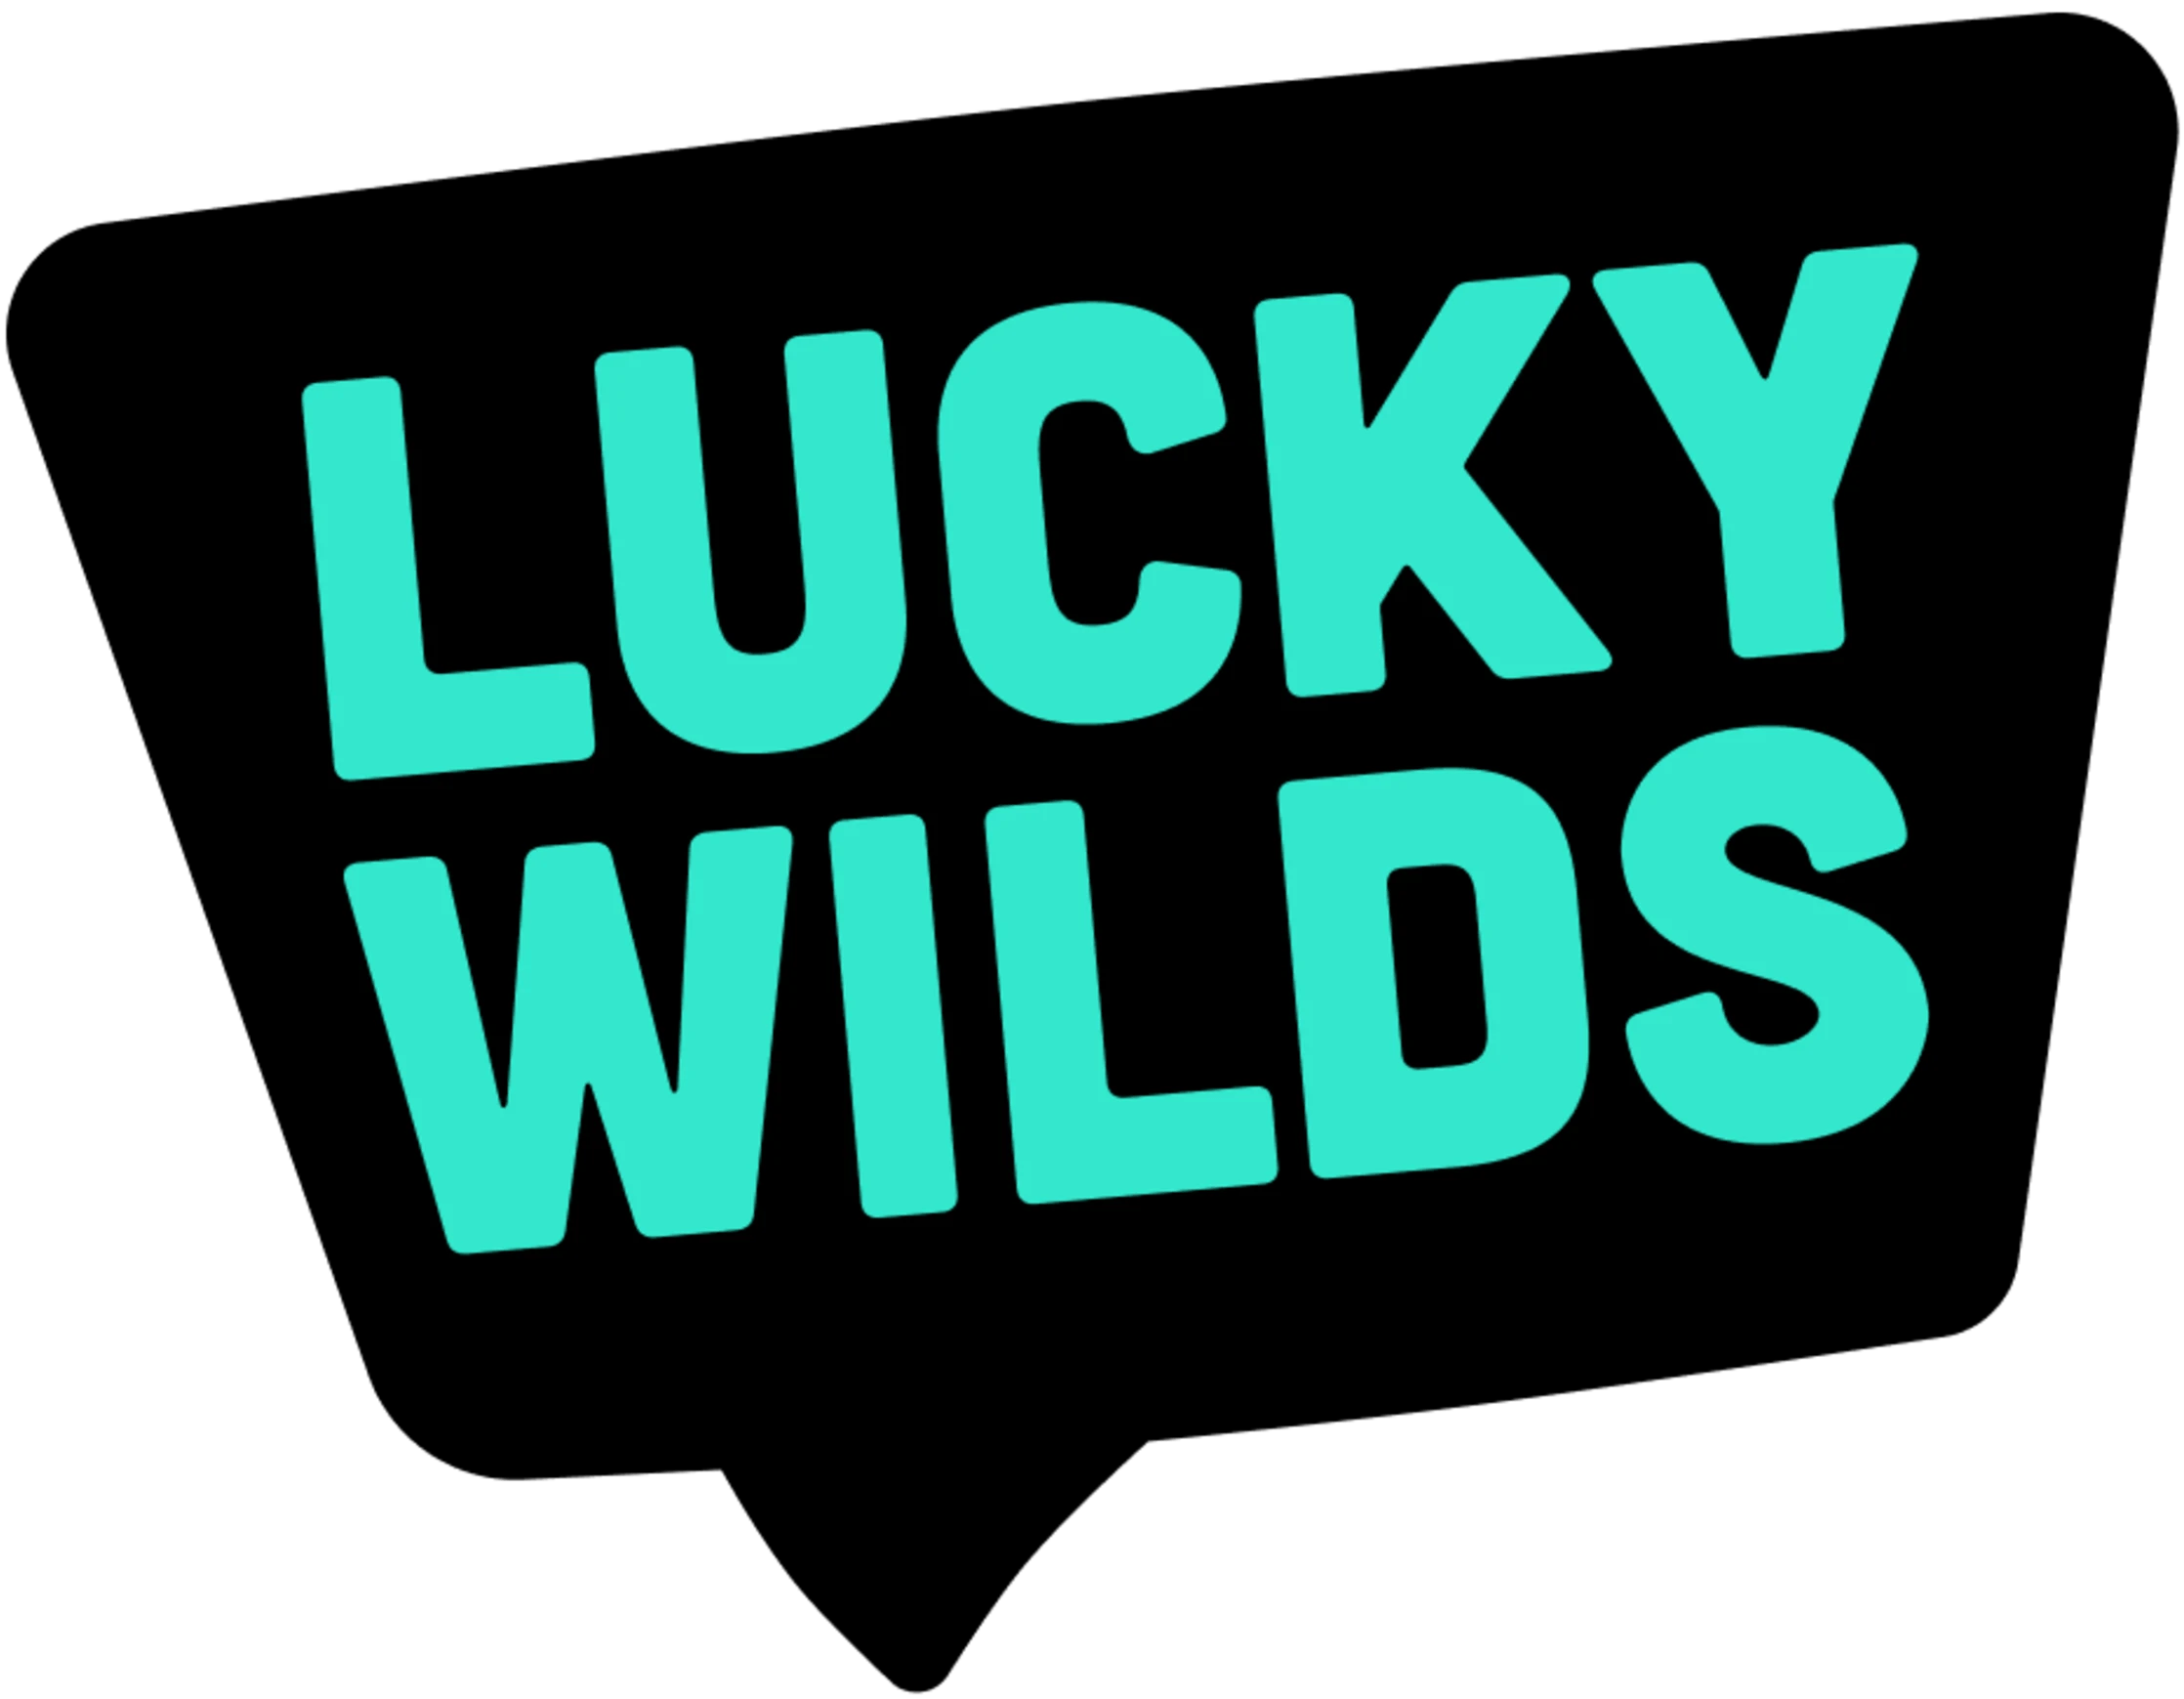 Lucky Wilds